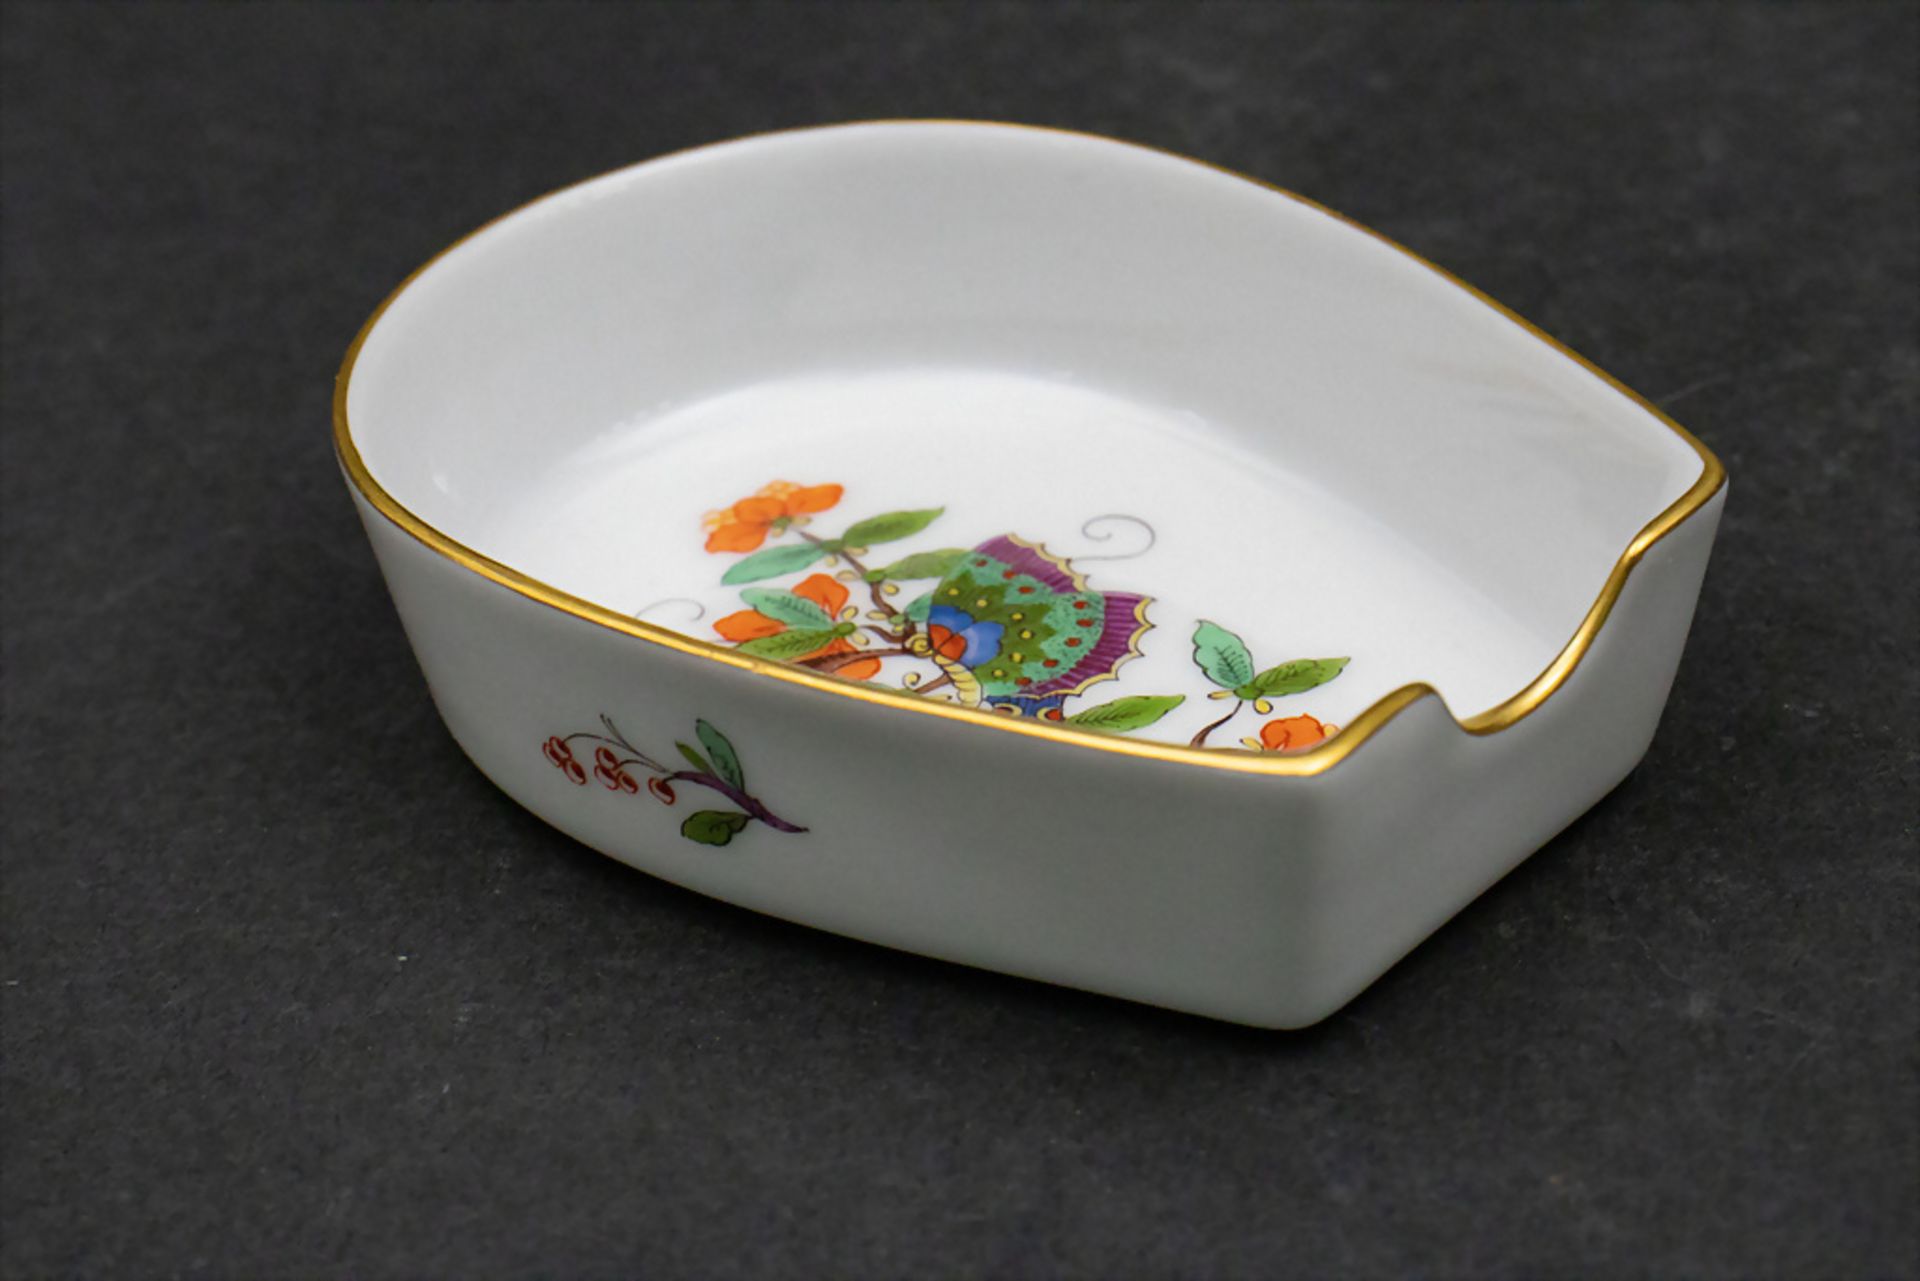 Ascher oder Löffelablage 'Chinesischer Schmetterling' / An ashtray or spoon rest with a ...